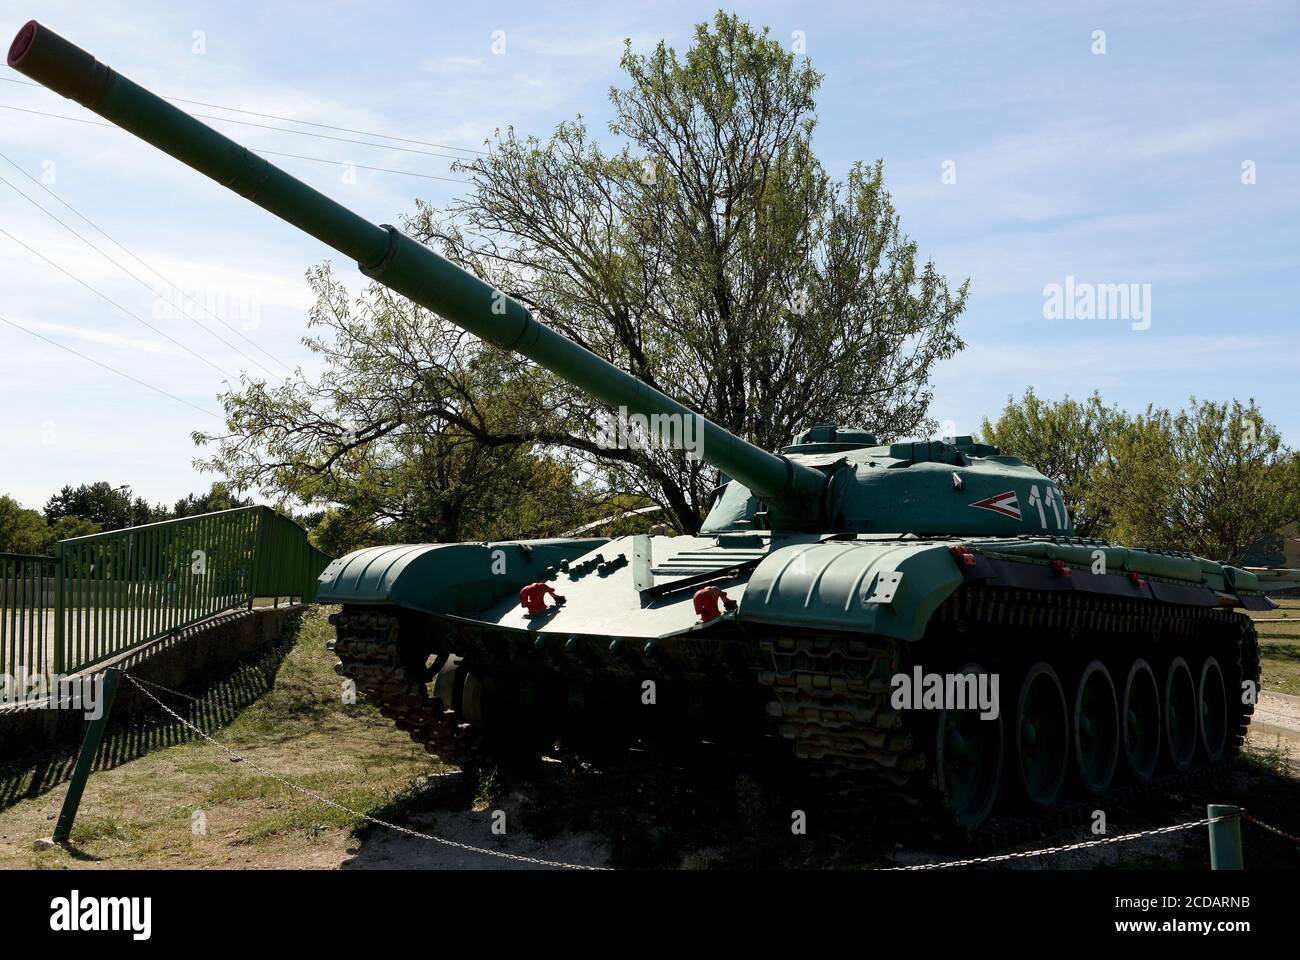 Zanka, Hongrie. 27 août 2020. Le char de combat principal T-72 est exposé au musée.le Musée militaire ZÃnka est une exposition en plein air contenant une variété d'armurerie utilisée par les forces de défense hongroises. ZÃnka est un village dans le comté de Veszprém situé sur les rives du lac Balaton, à 150 km au sud-ouest de la capitale, Budapest, Hongrie. Crédit : Paul Lakatos/SOPA Images/ZUMA Wire/Alamy Live News Banque D'Images